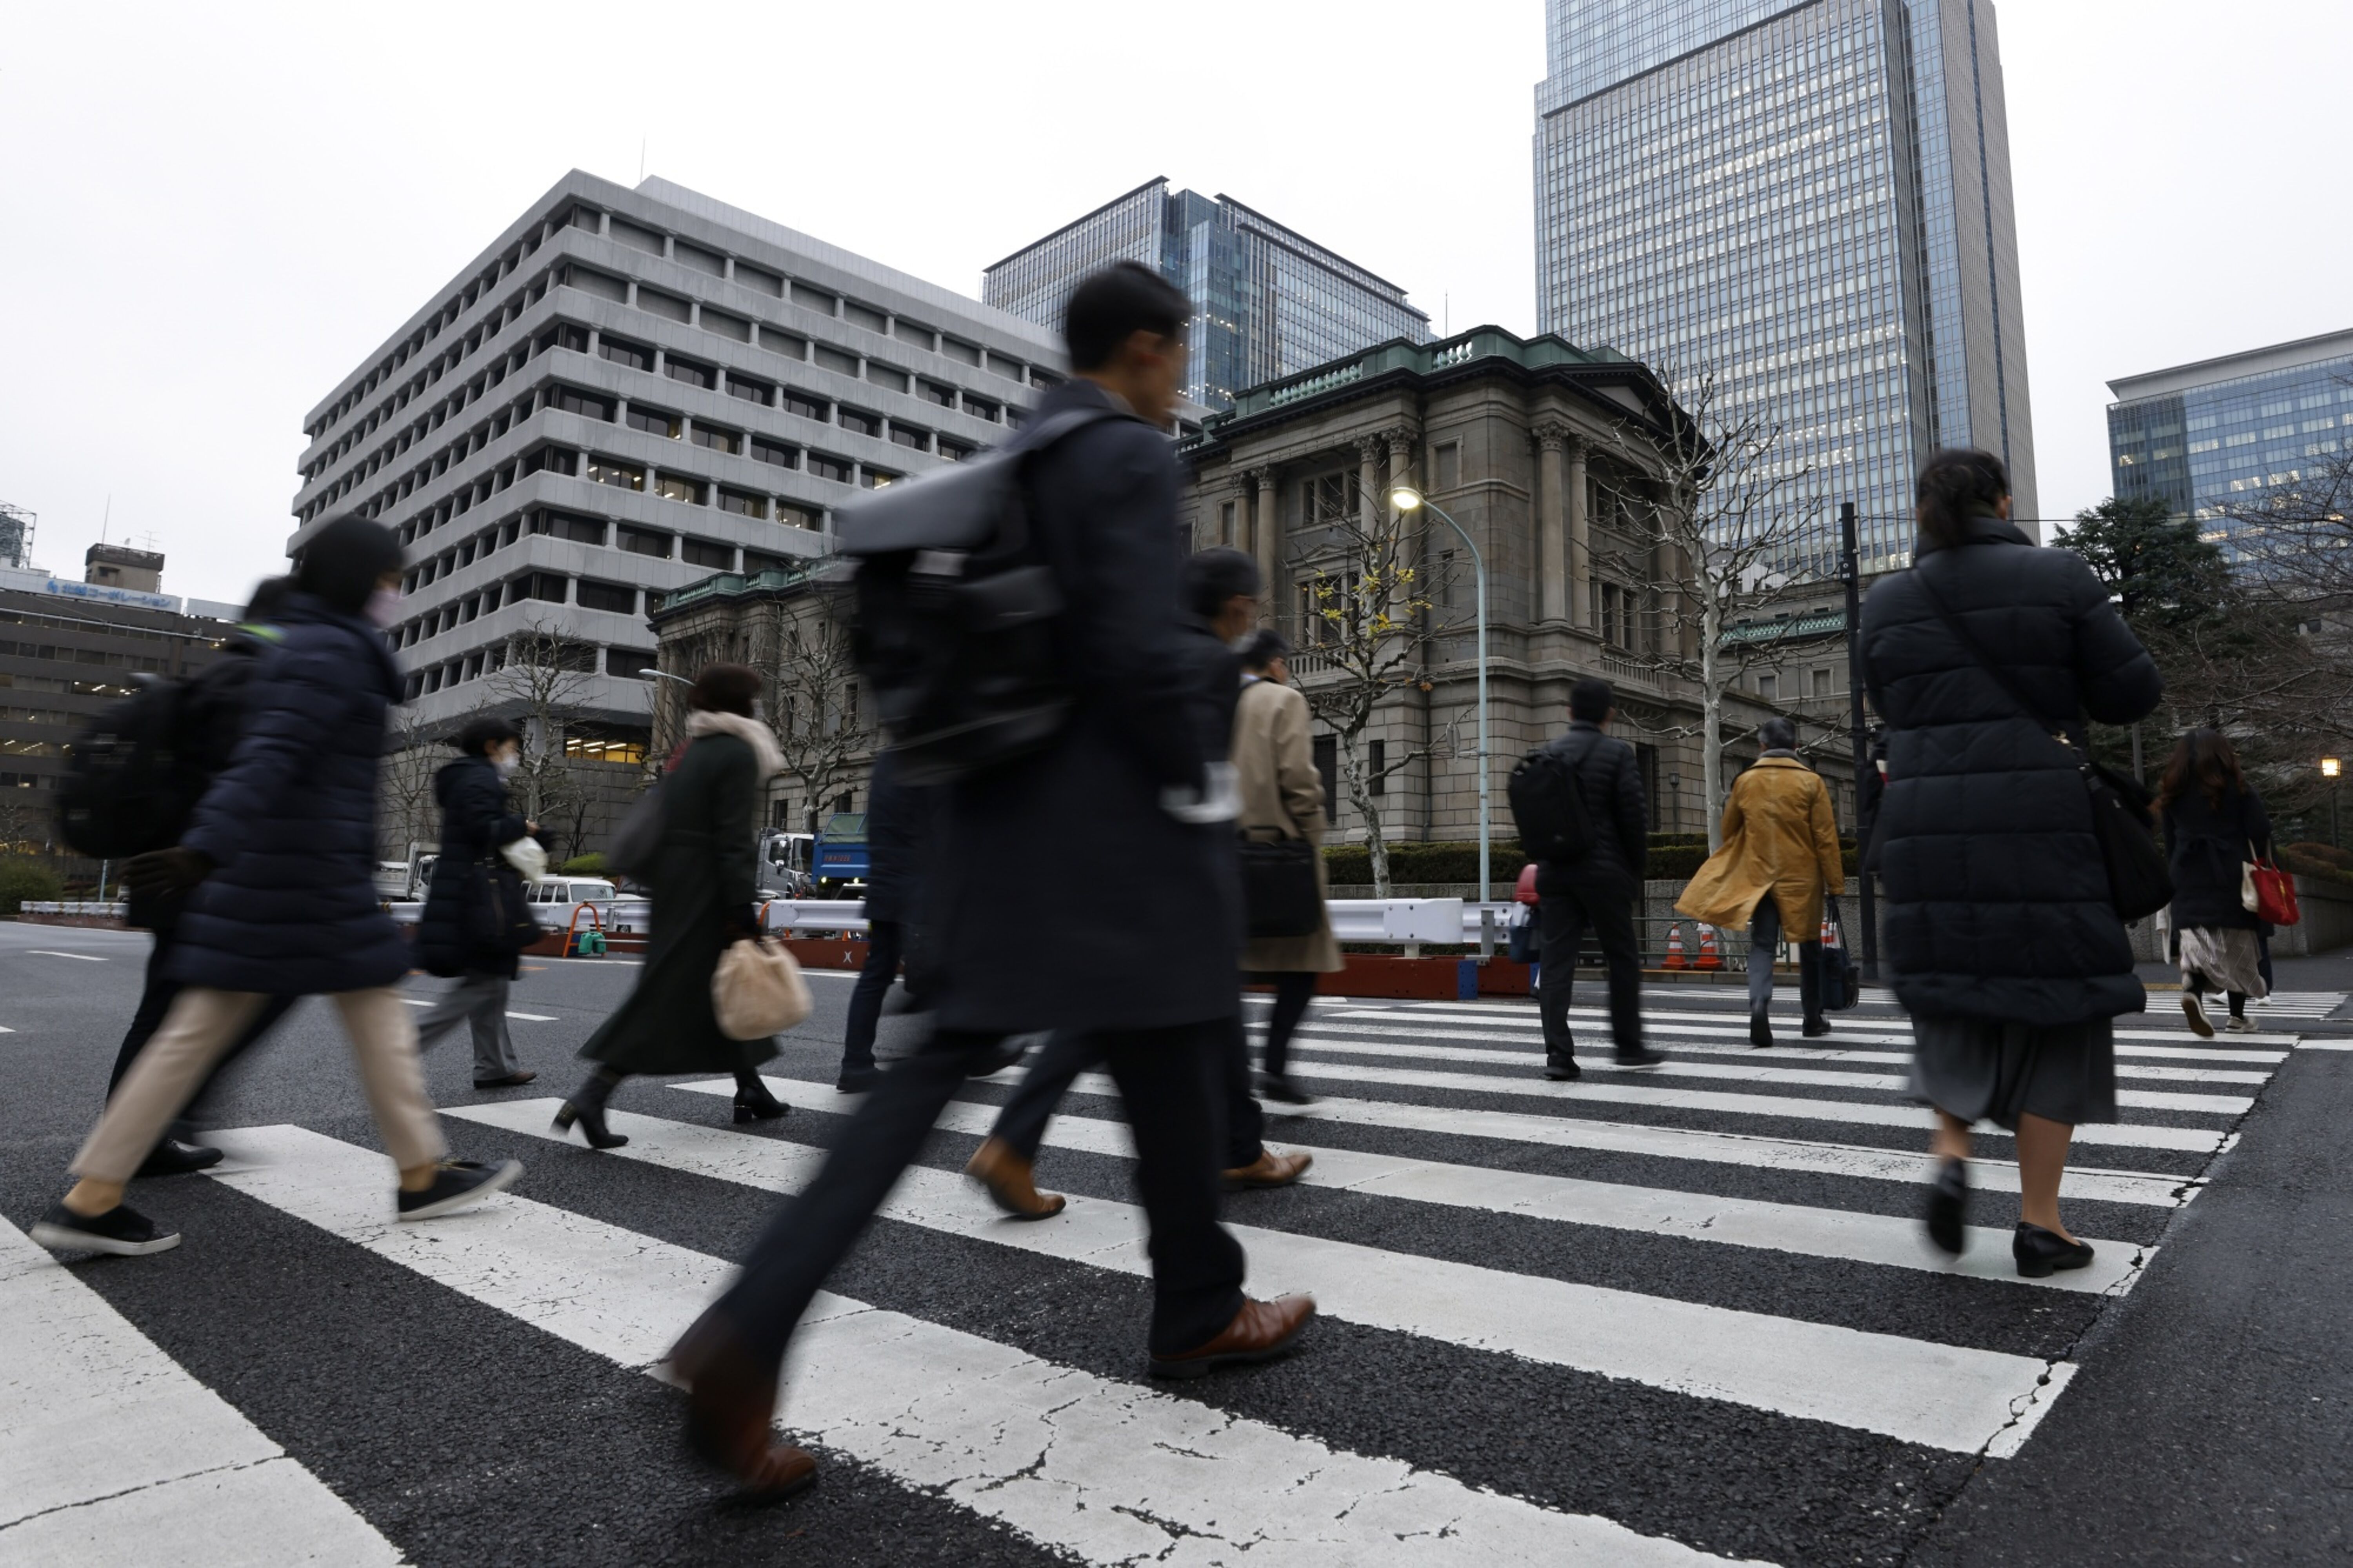 Entro il 2040 in Giappone mancheranno 11 milioni di lavoratori: uno studio